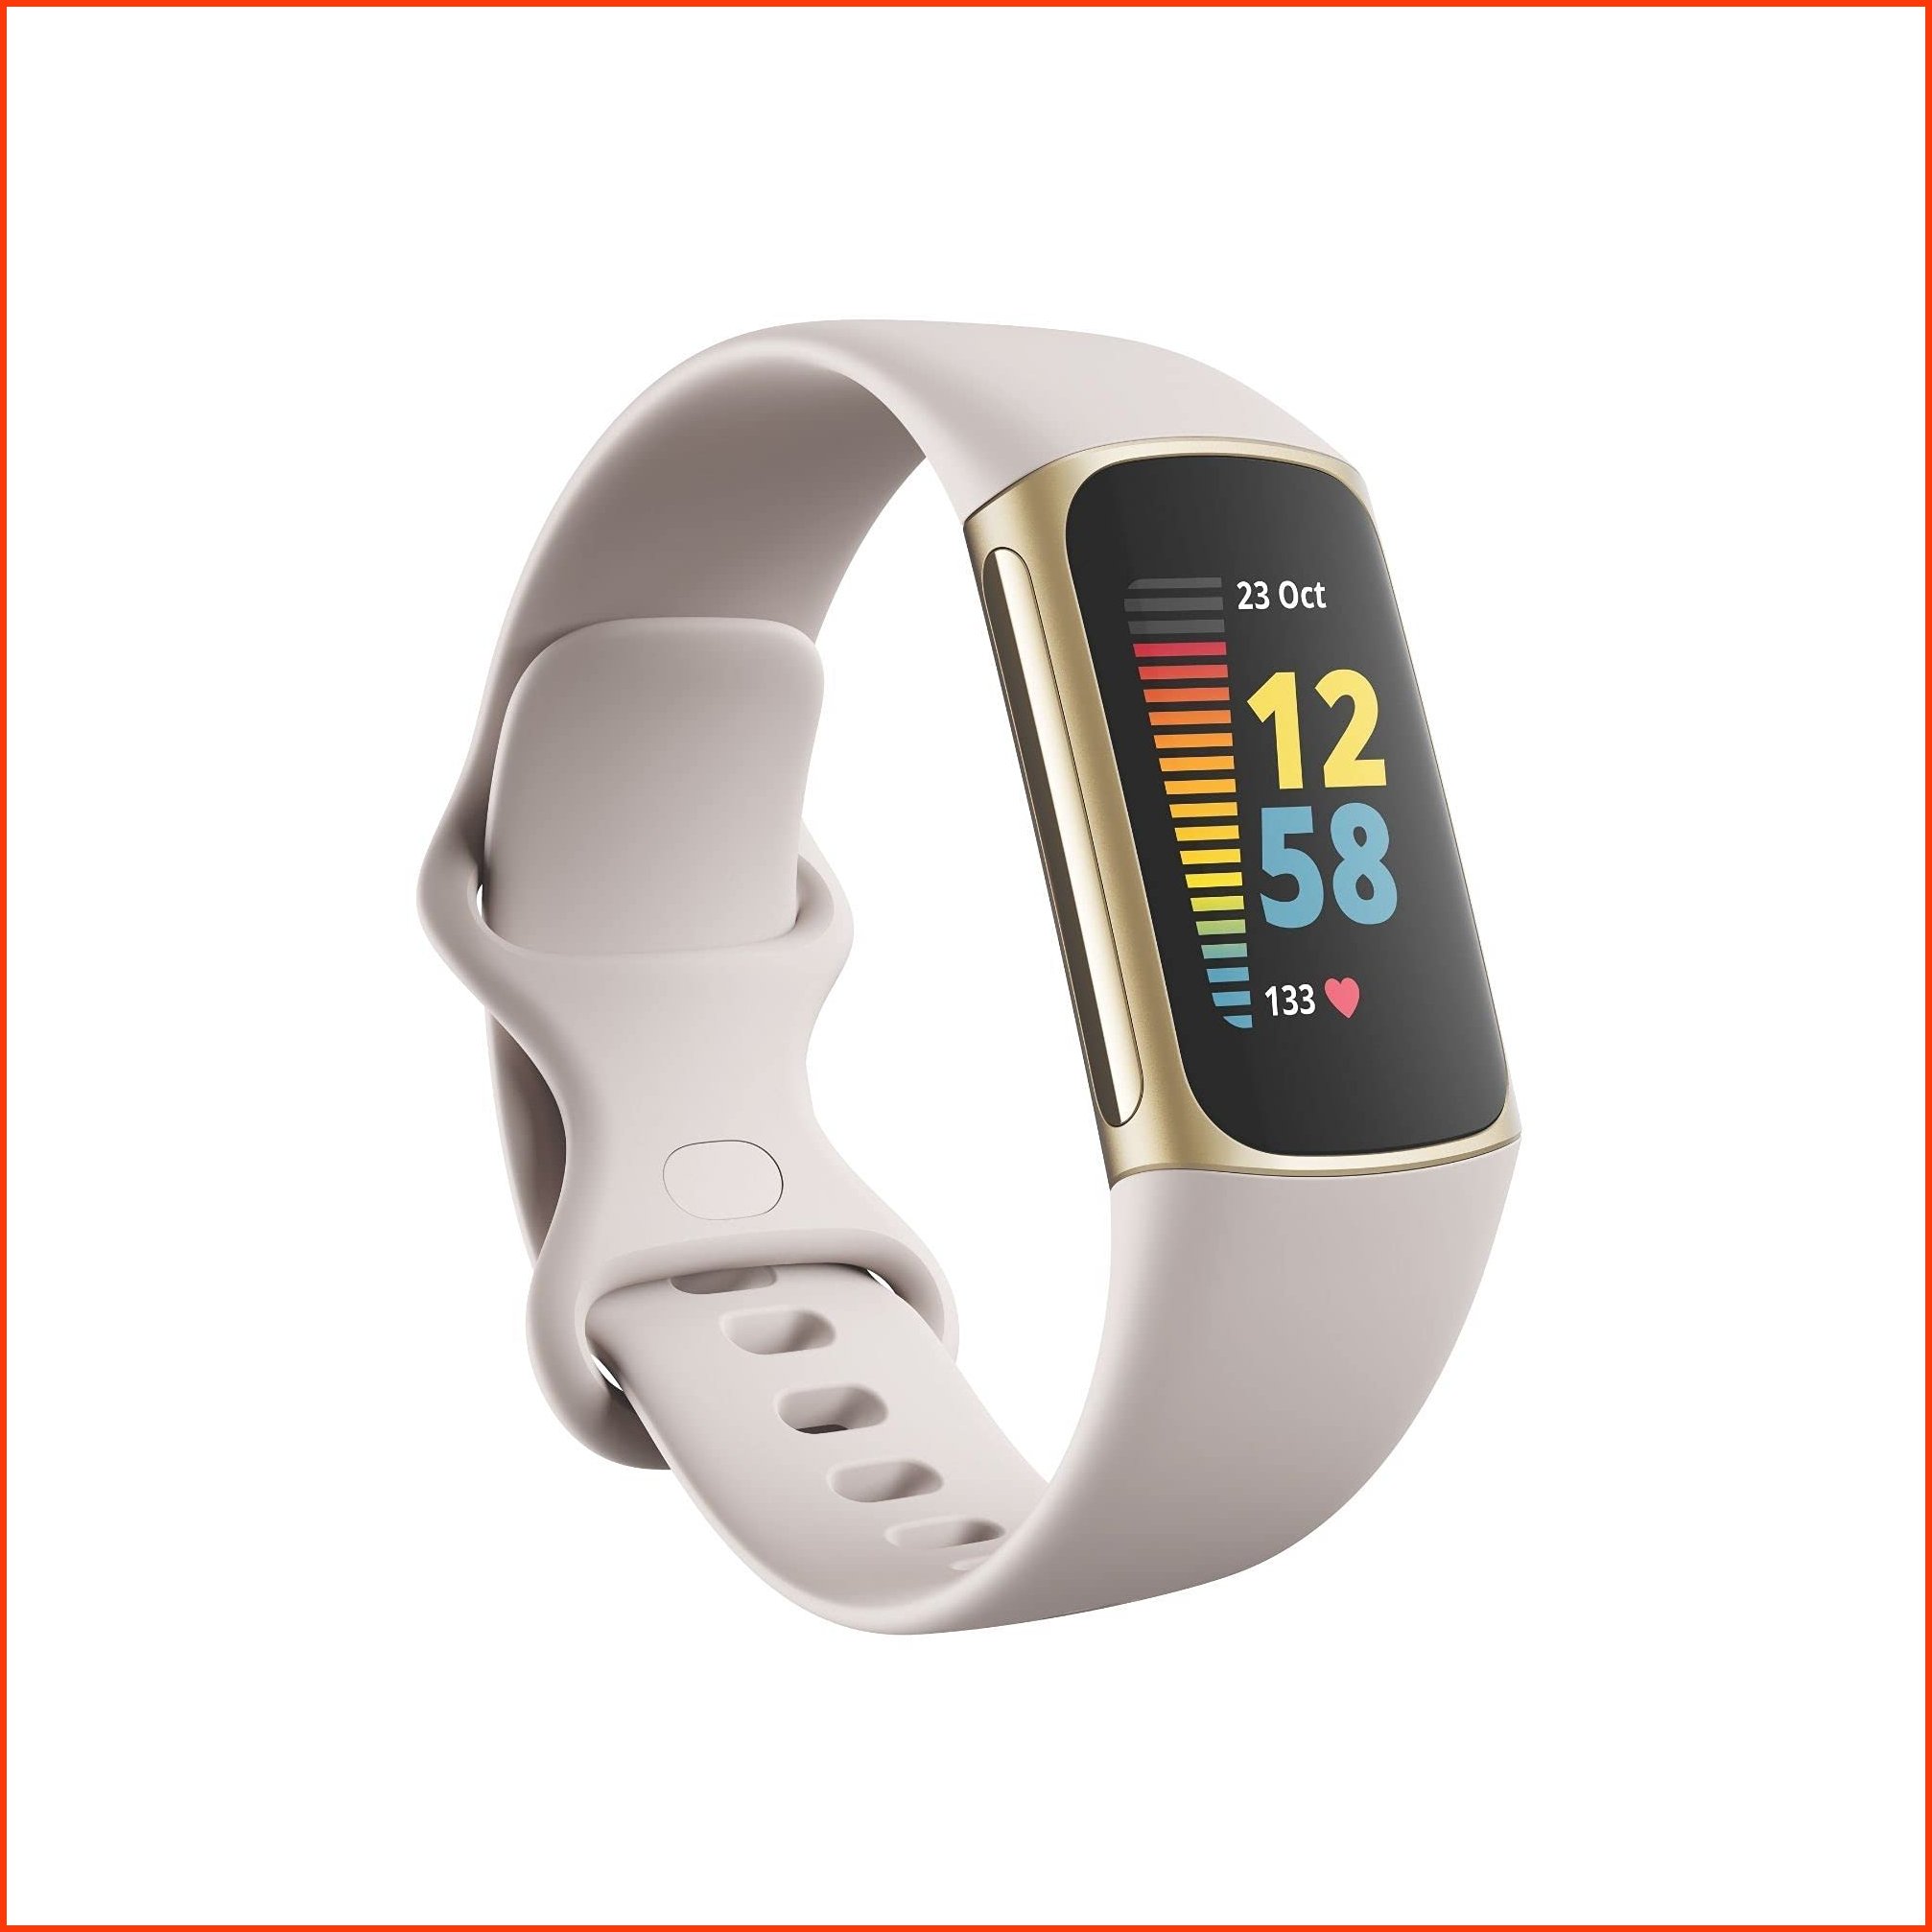 並行輸入品Fitbit Charge 5 Advanced Fitness Health Tracker with Built-in GPS Stress Management Tools Sleep Tracking